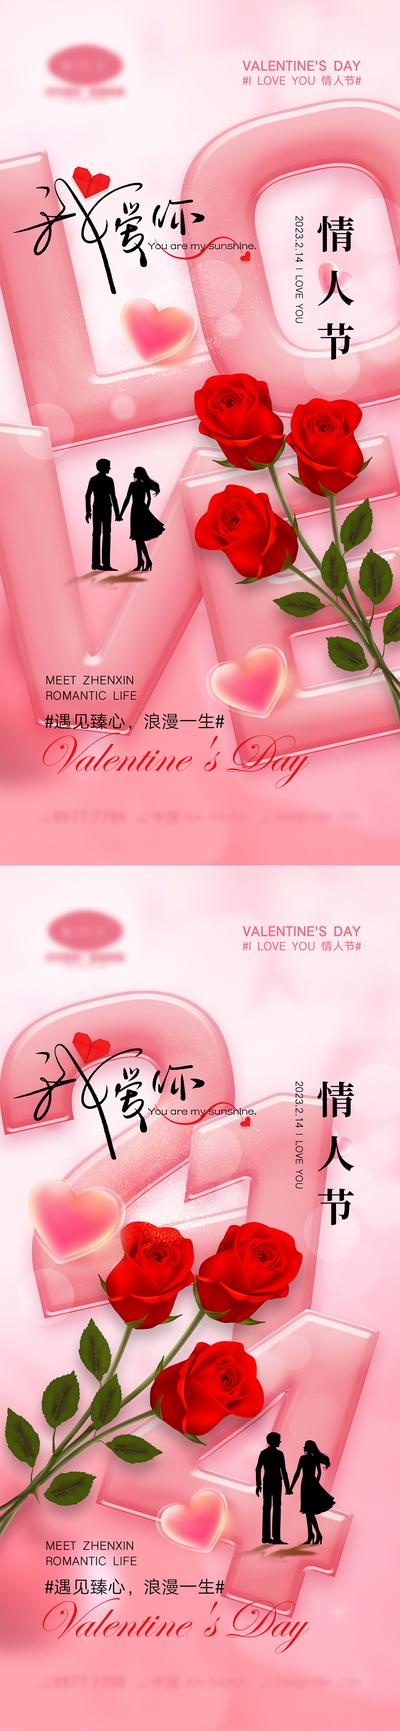 南门网 海报 公历节日 情人节 214 玫瑰 粉色 系列